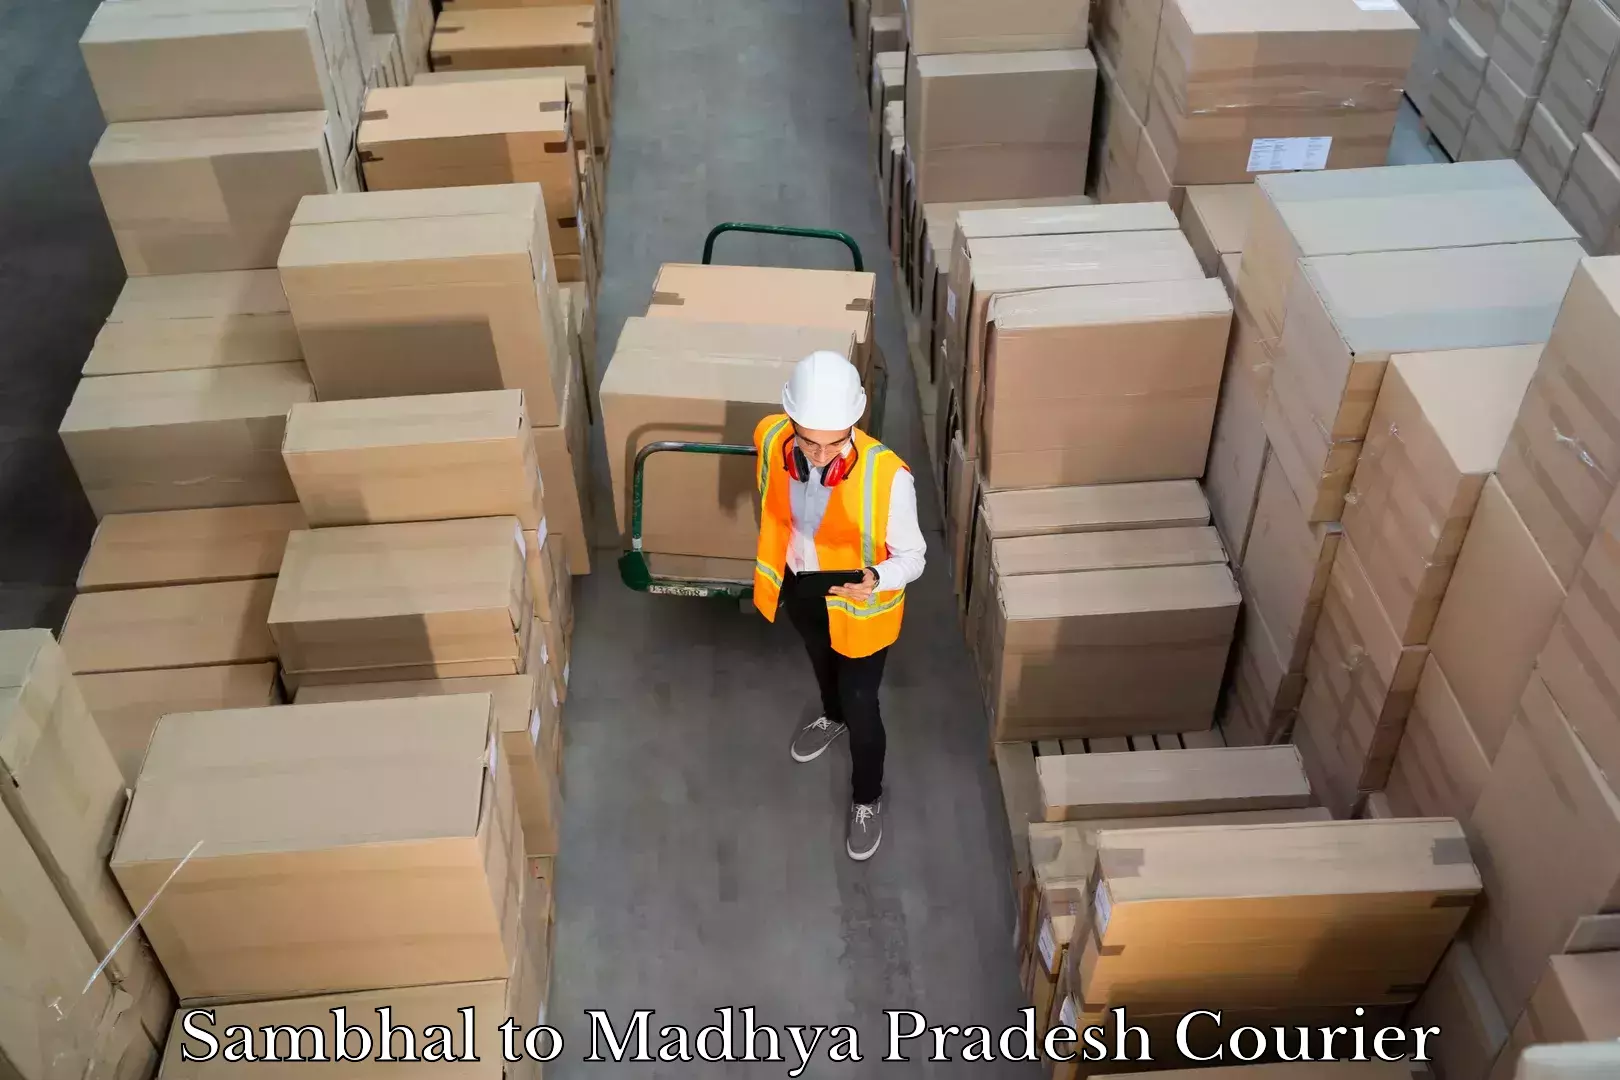 Baggage delivery optimization in Sambhal to Lashkar